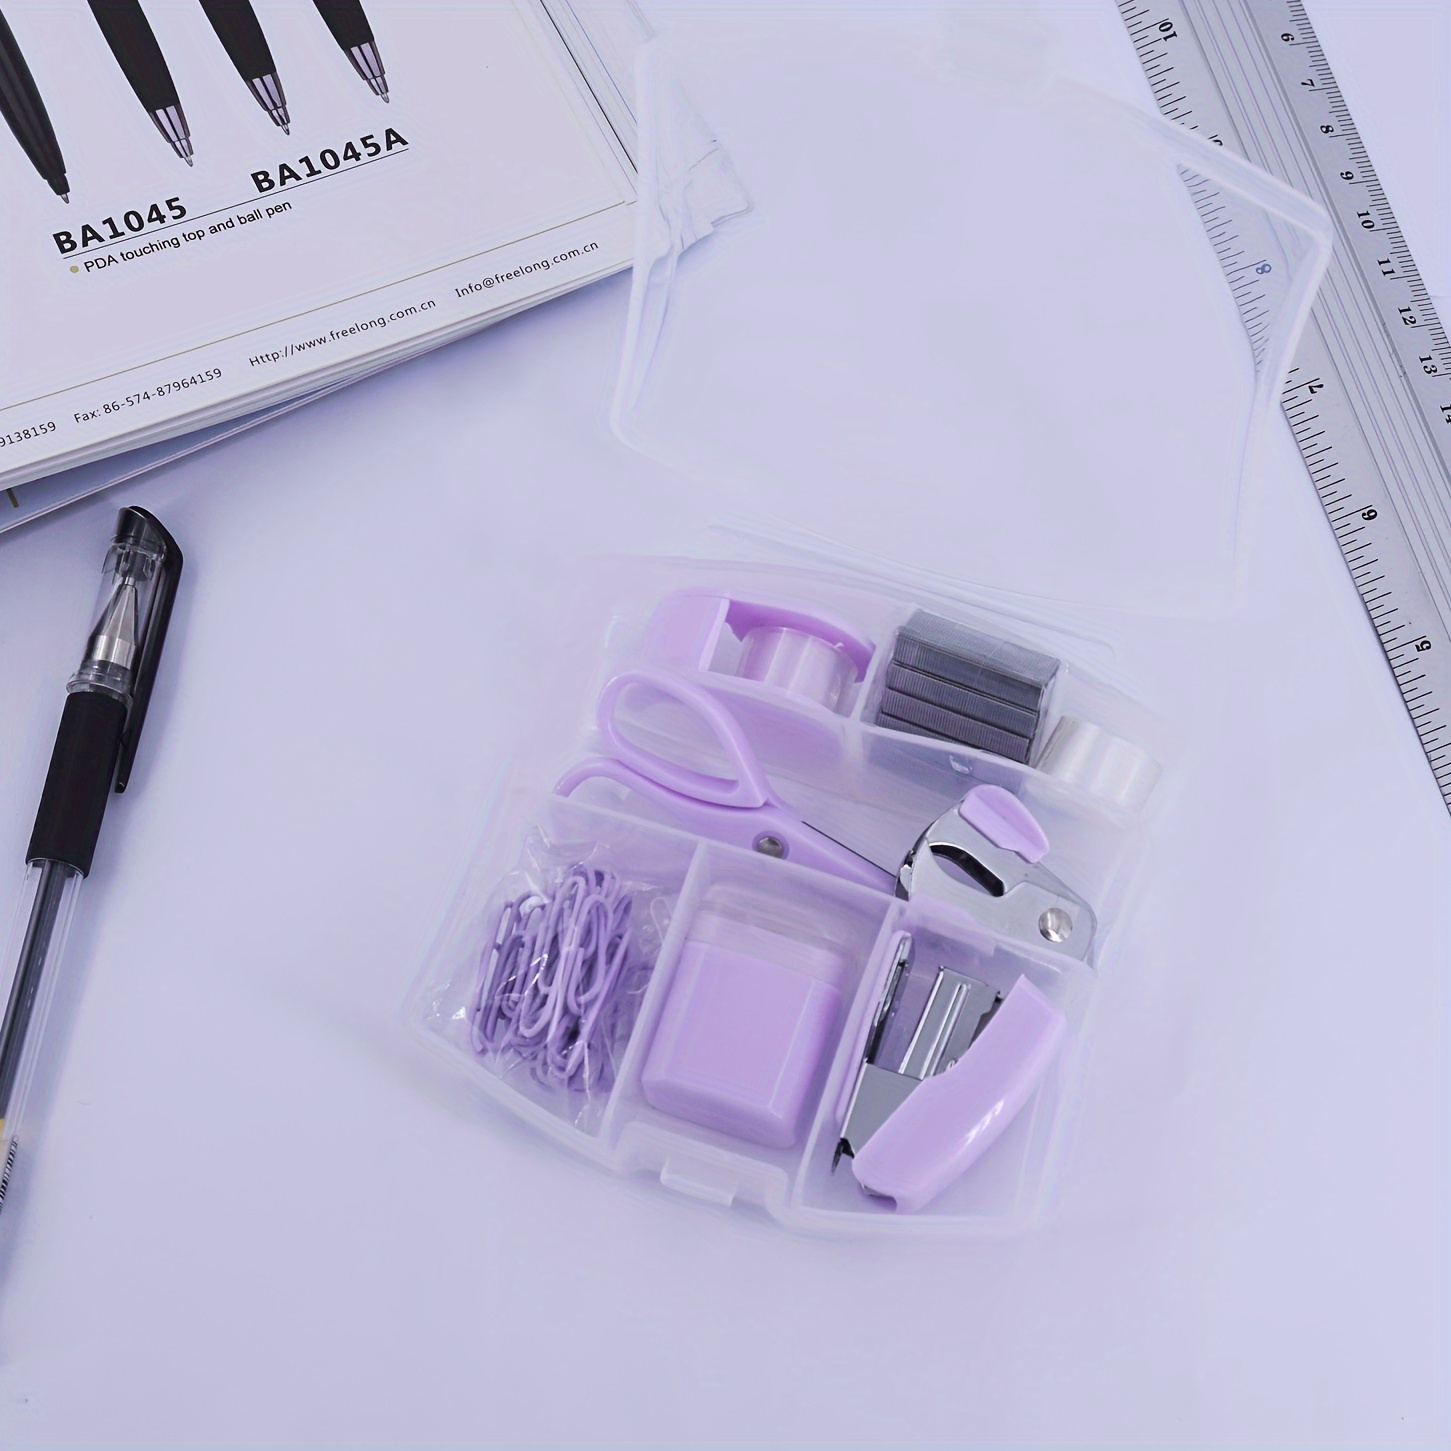 LD Pink Mini Office Supply Kit Portable Case with Scissors, Paper Clips, Tape Dispenser, Pencilener, Stapler & Staple Remover